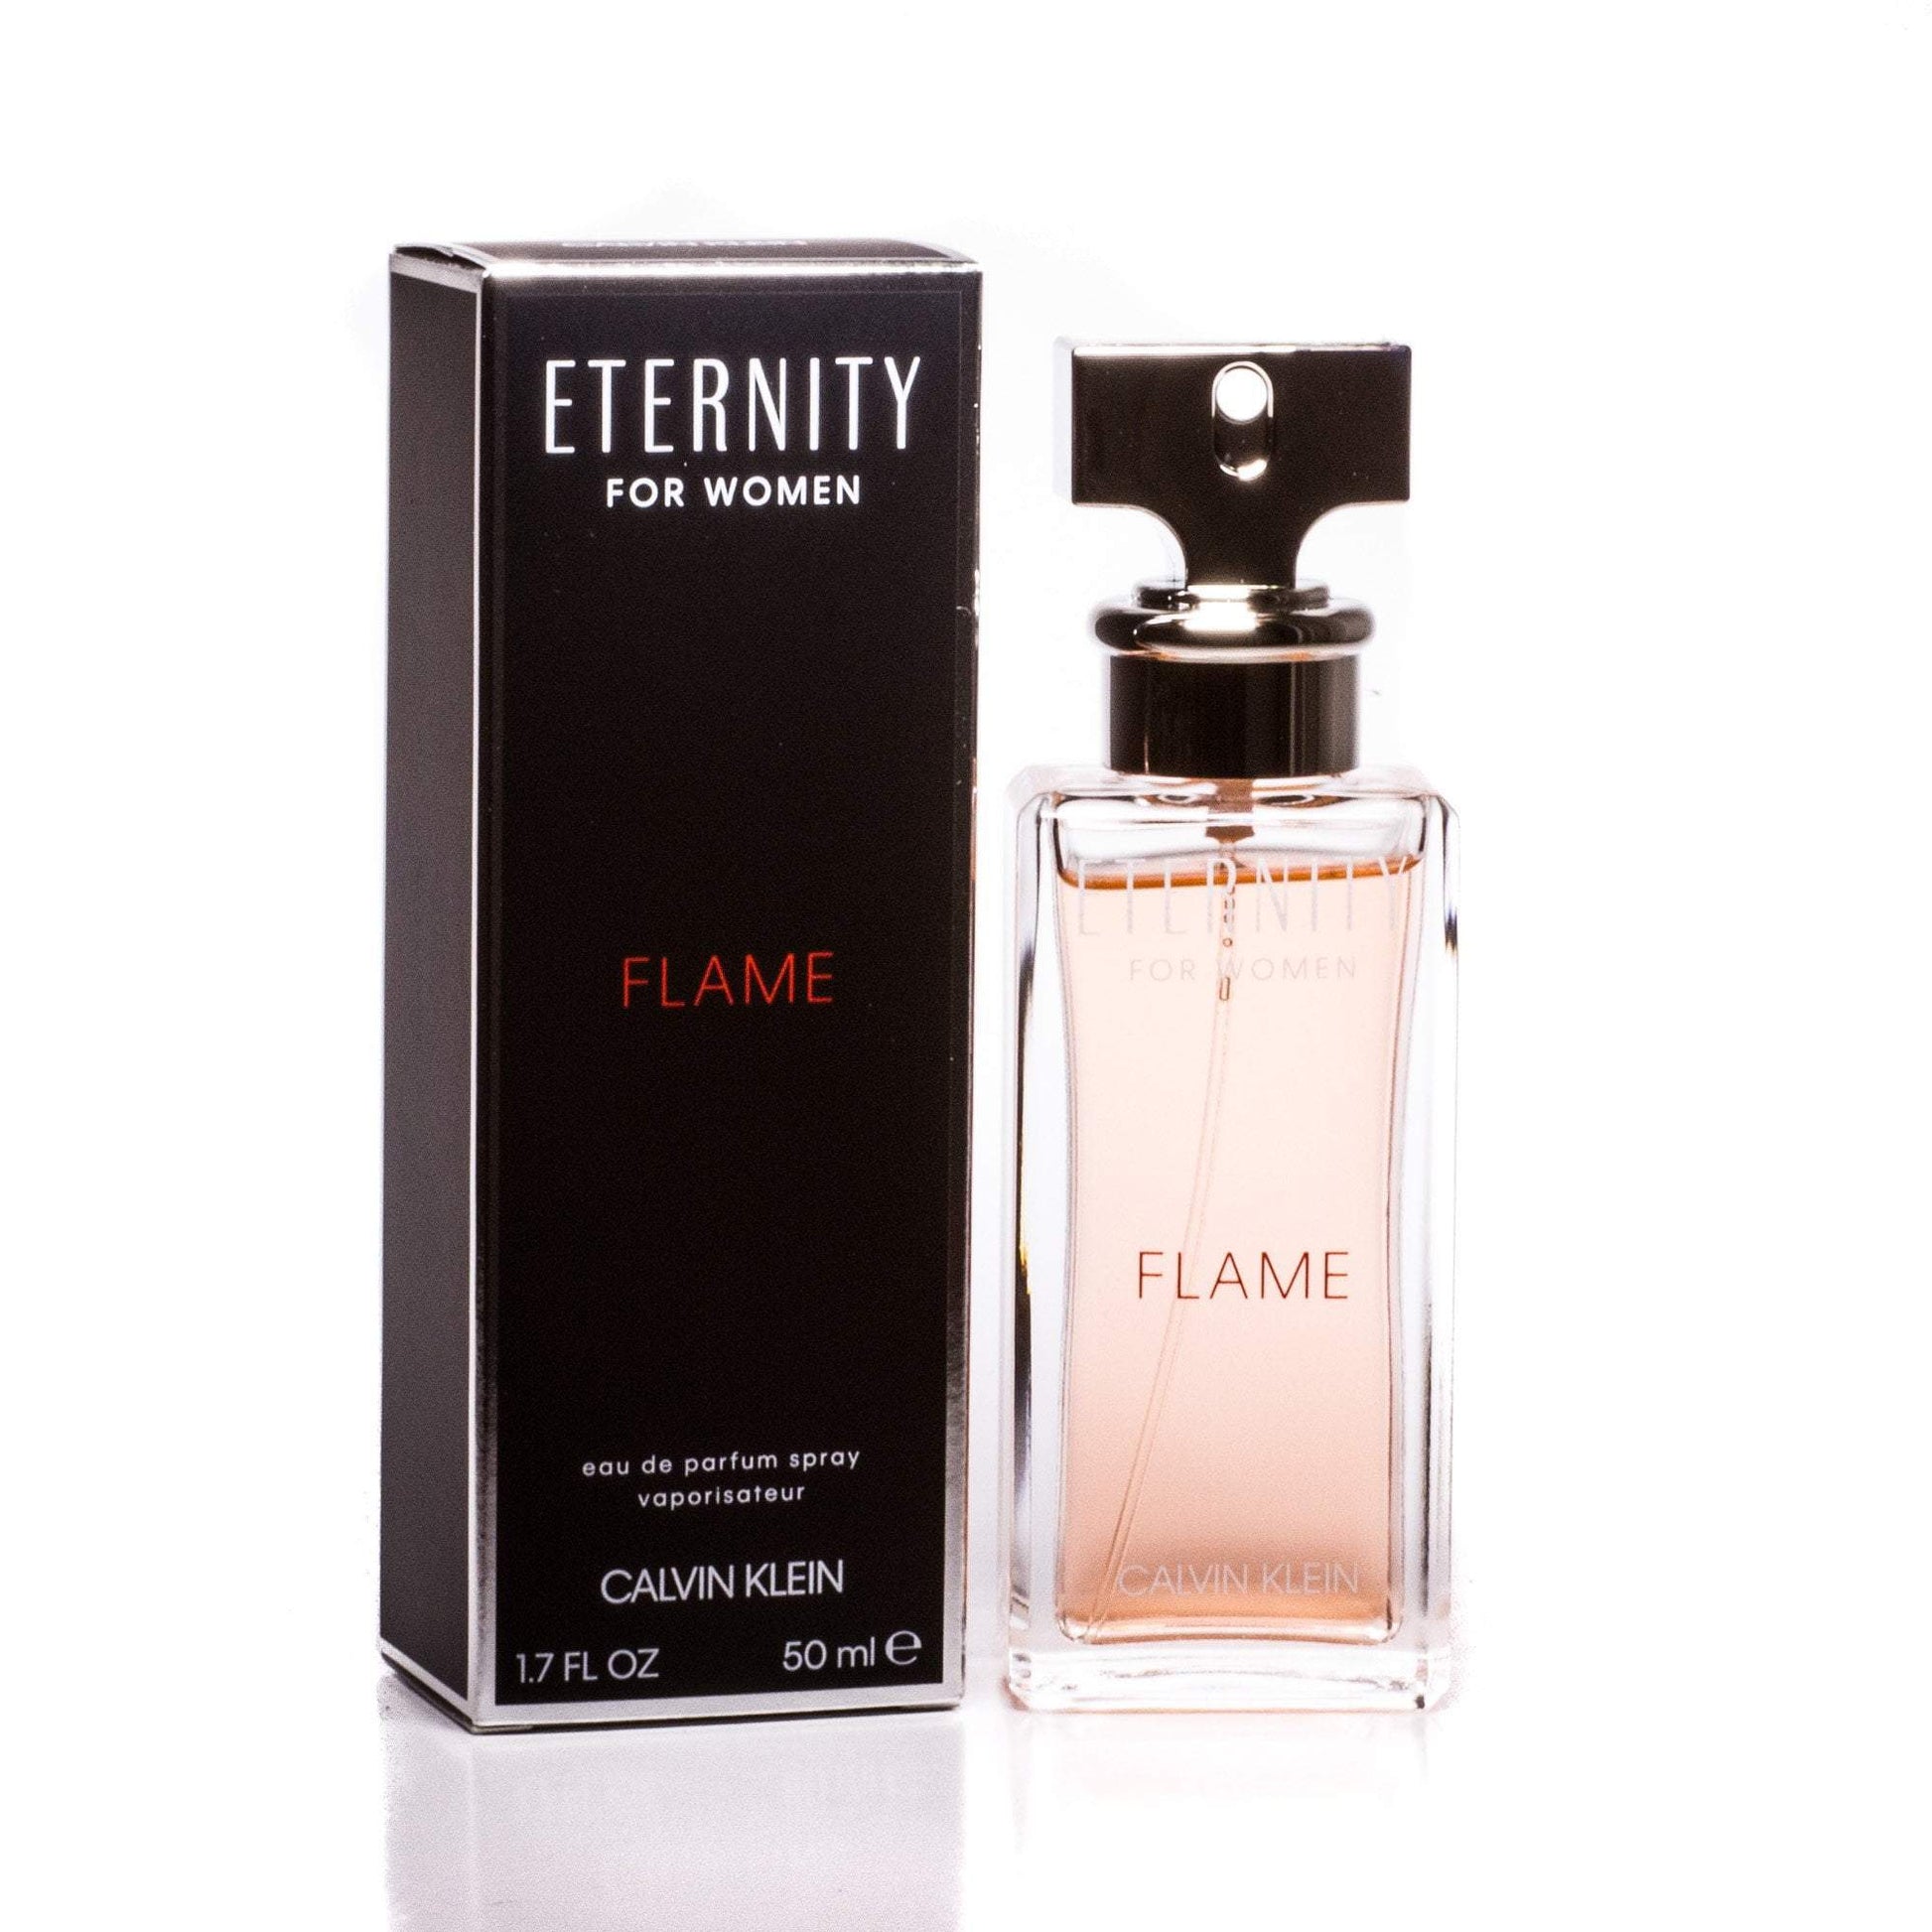 Eternity Flame Eau de Parfum Spray for Women by Calvin Klein 3.4 oz. Click to open in modal